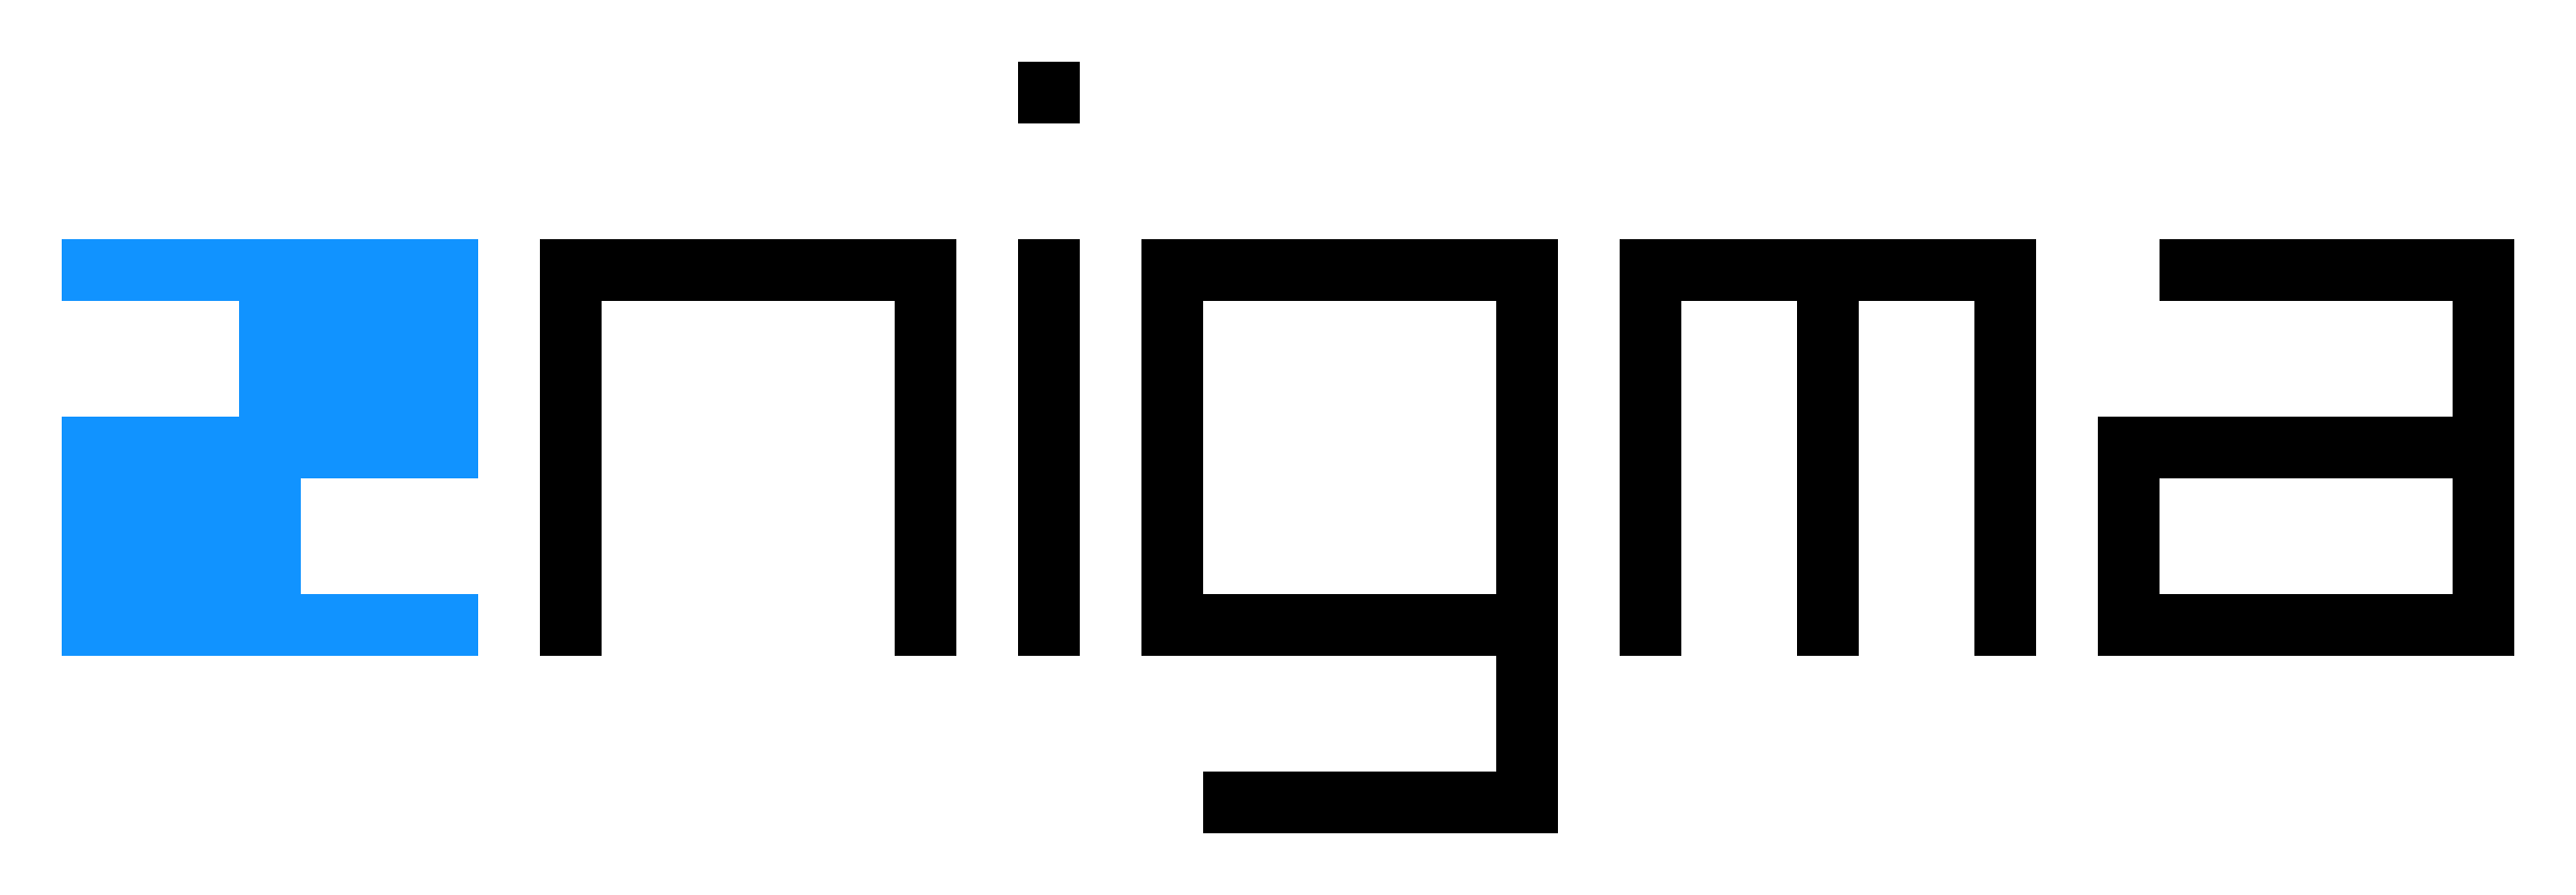 aenigma logo full